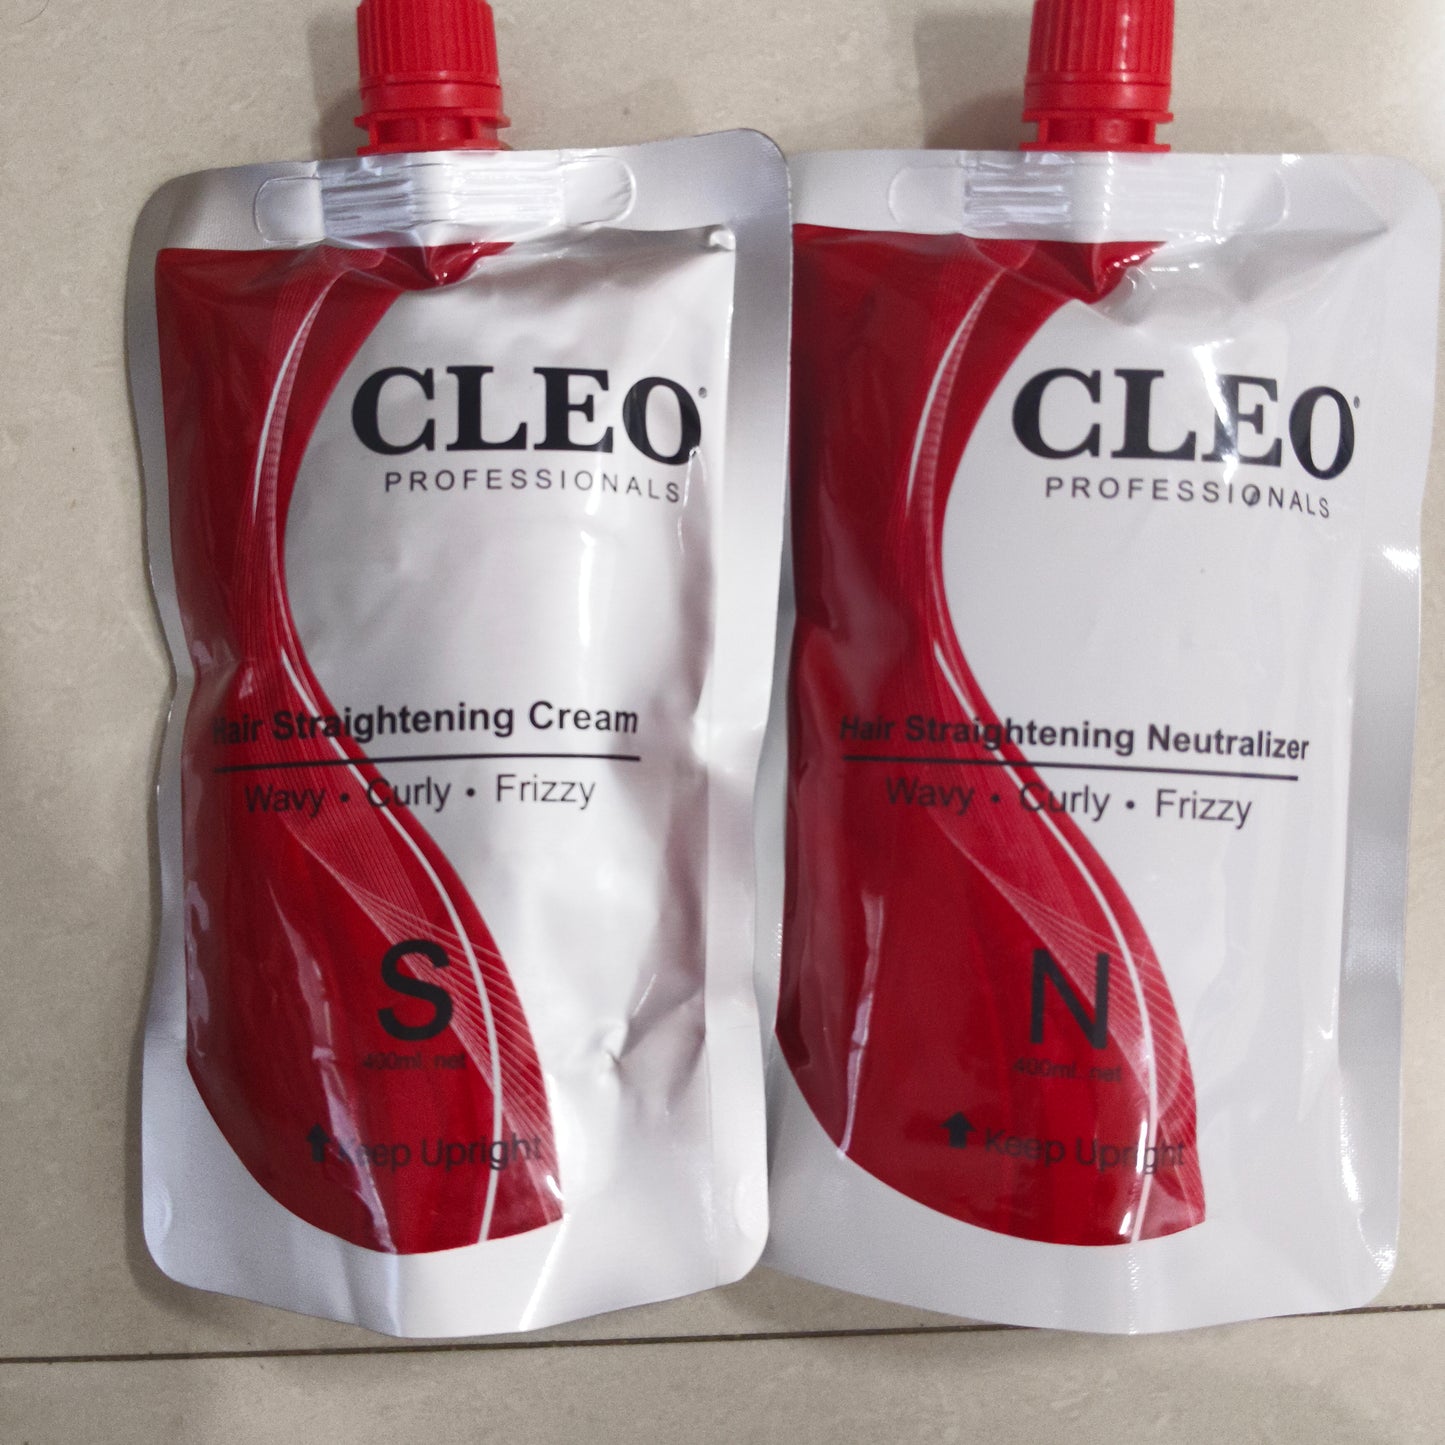 Cleo hair straightening cream